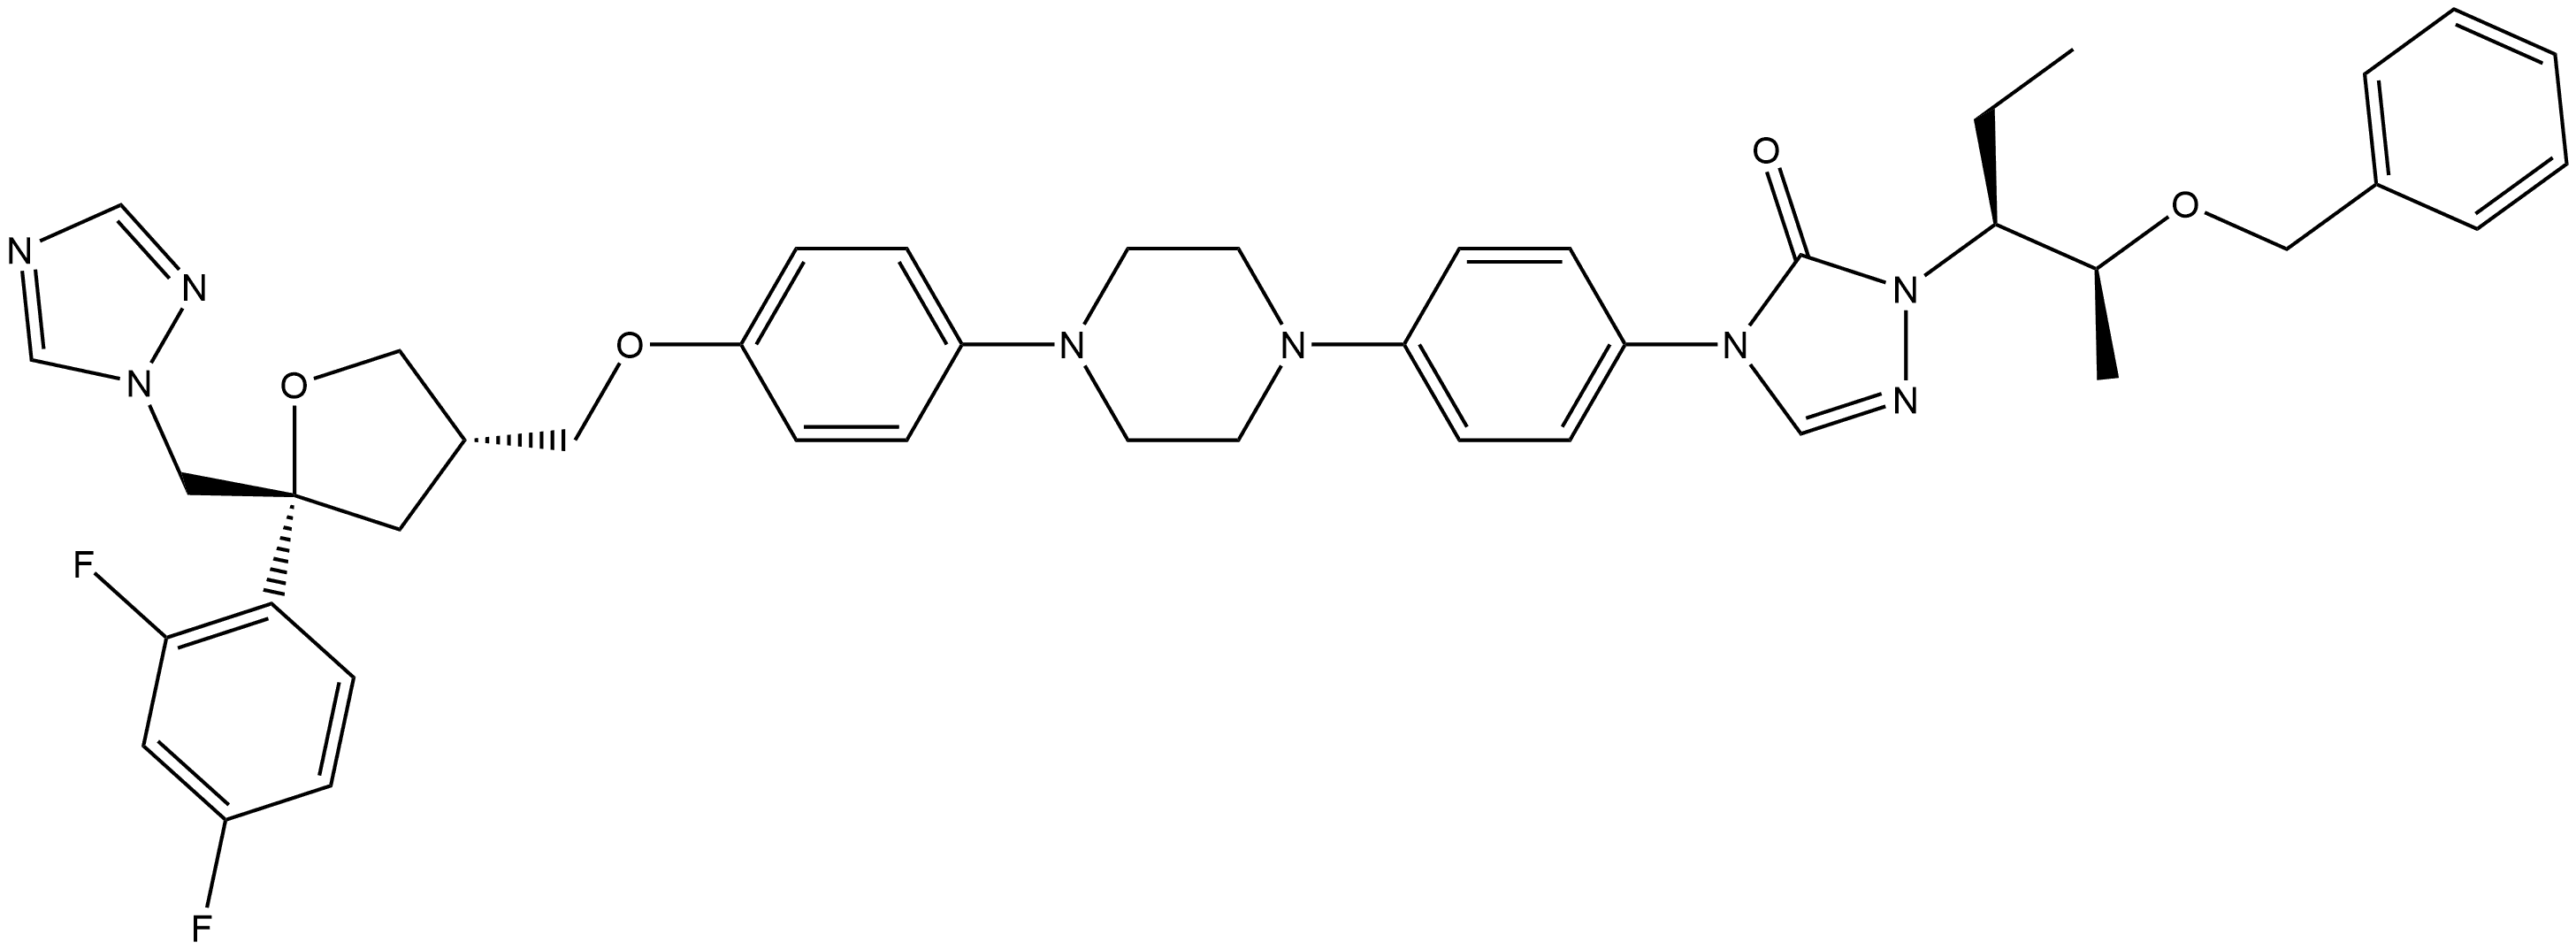 D-erythro-Pentitol, 1,4-anhydro-2,3,5-trideoxy-4-C-(2,4-difluorophenyl)-2-[[4-[4-[4-[1-[(1S,2S)-1-ethyl-2-(phenylmethoxy)propyl]-1,5-dihydro-5-oxo-4H-1,2,4-triazol-4-yl]phenyl]-1-piperazinyl]phenoxy]methyl]-5-(1H-1,2,4-triazol-1-yl)-|D-erythro-Pentitol, 1,4-anhydro-2,3,5-trideoxy-4-C-(2,4-difluorophenyl)-2-[[4-[4-[4-[1-[(1S,2S)-1-ethyl-2-(phenylmethoxy)propyl]-1,5-dihydro-5-oxo-4H-1,2,4-triazol-4-yl]phenyl]-1-piperazinyl]phenoxy]methyl]-5-(1H-1,2,4-triazol-1-yl)-